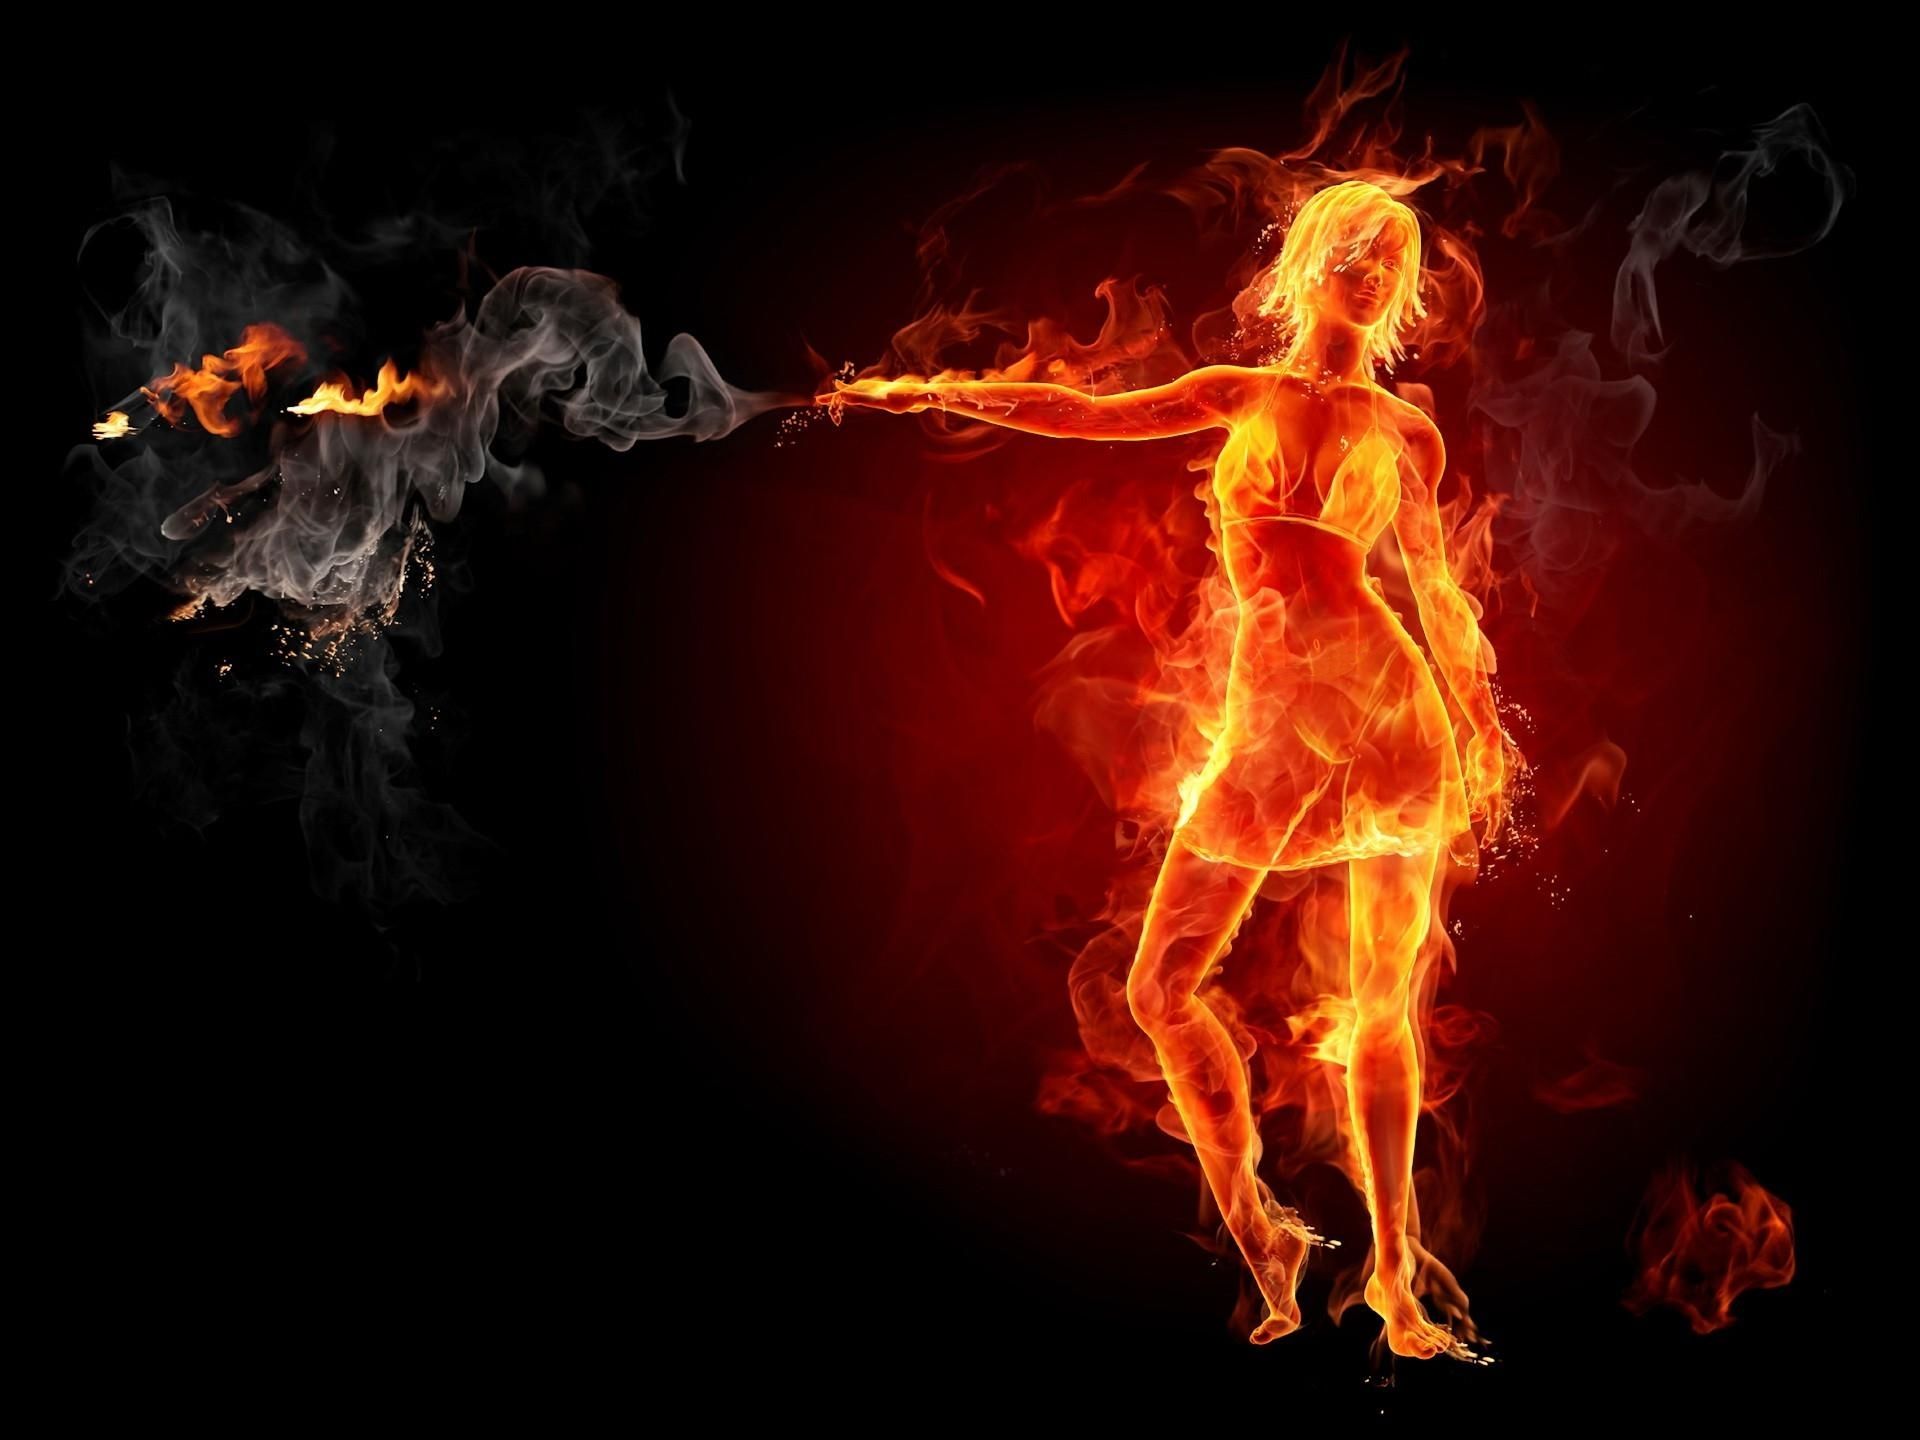 извергающая пламя, силуэт огненной девушки, поток пламени, 3D обои для рабочего стола, 3D-графика